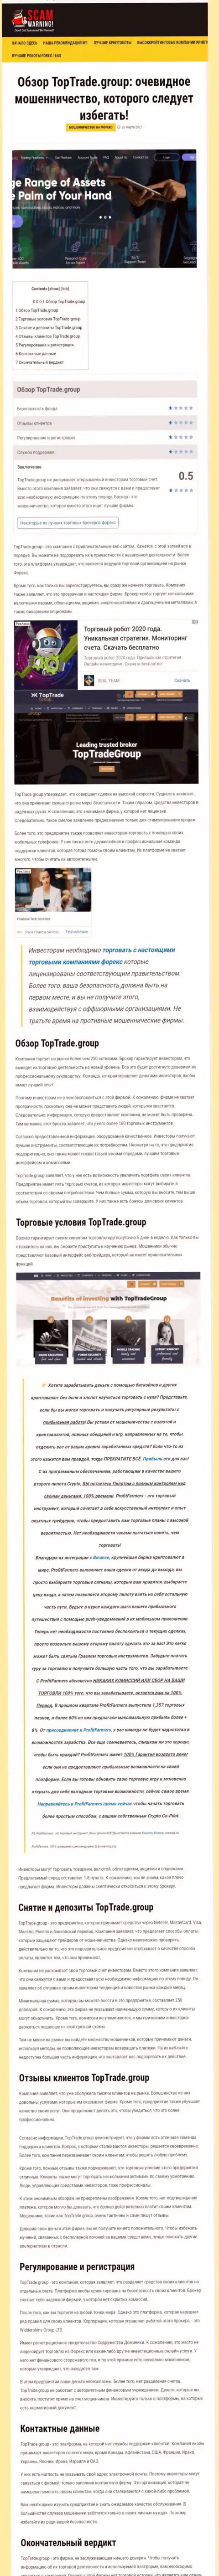 Обзорная статья противозаконных деяний TopTrade Group, нацеленных на слив реальных клиентов